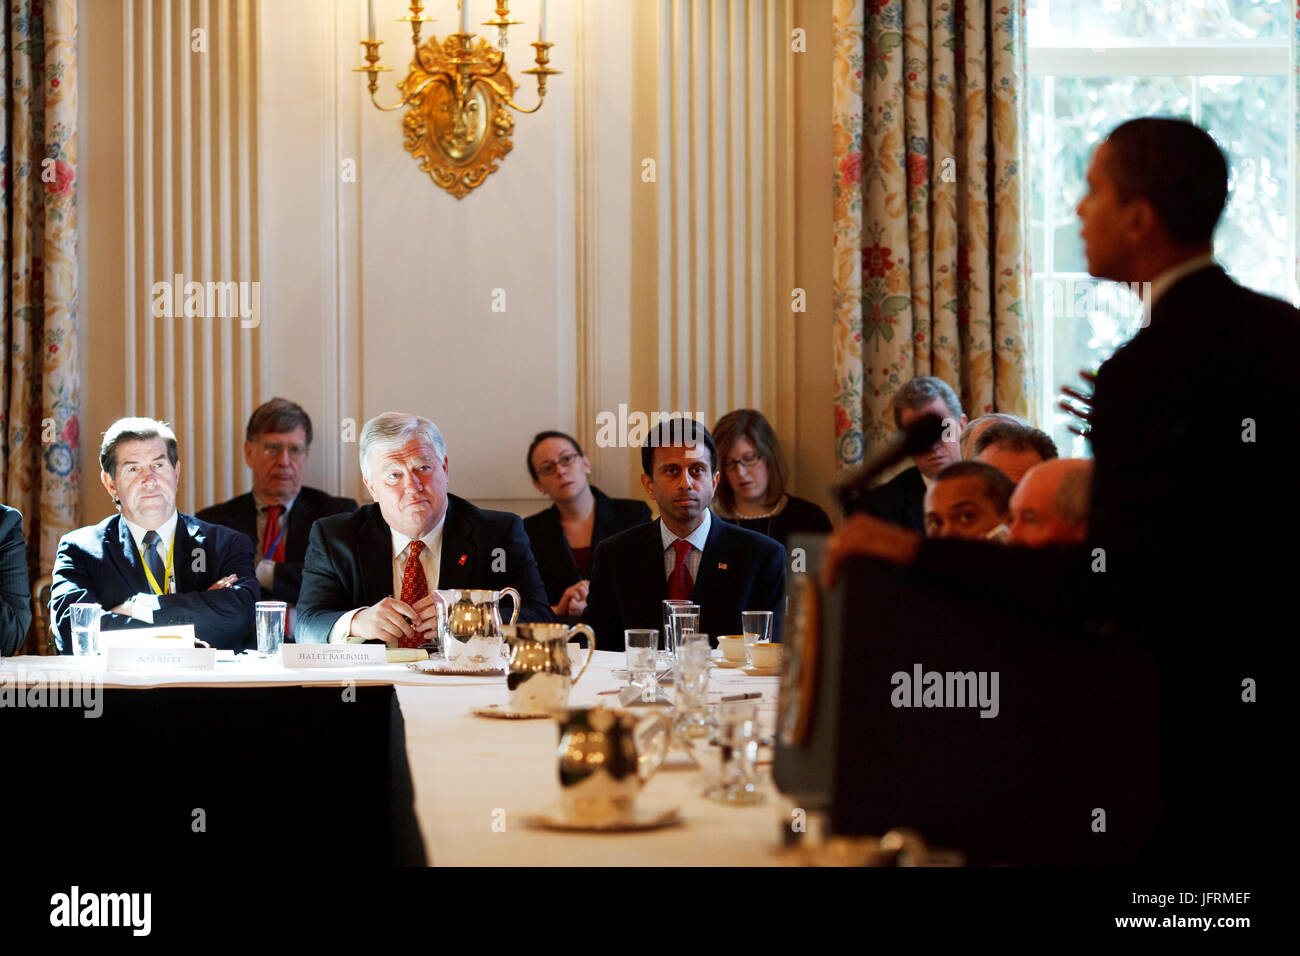 Le président Barack Obama et le Vice-président Joe Biden à la réunion de l'Association nationale des gouverneurs de l'État Salle à manger 2/23/09 Photo Officiel de la Maison Blanche par Pete Souza Banque D'Images